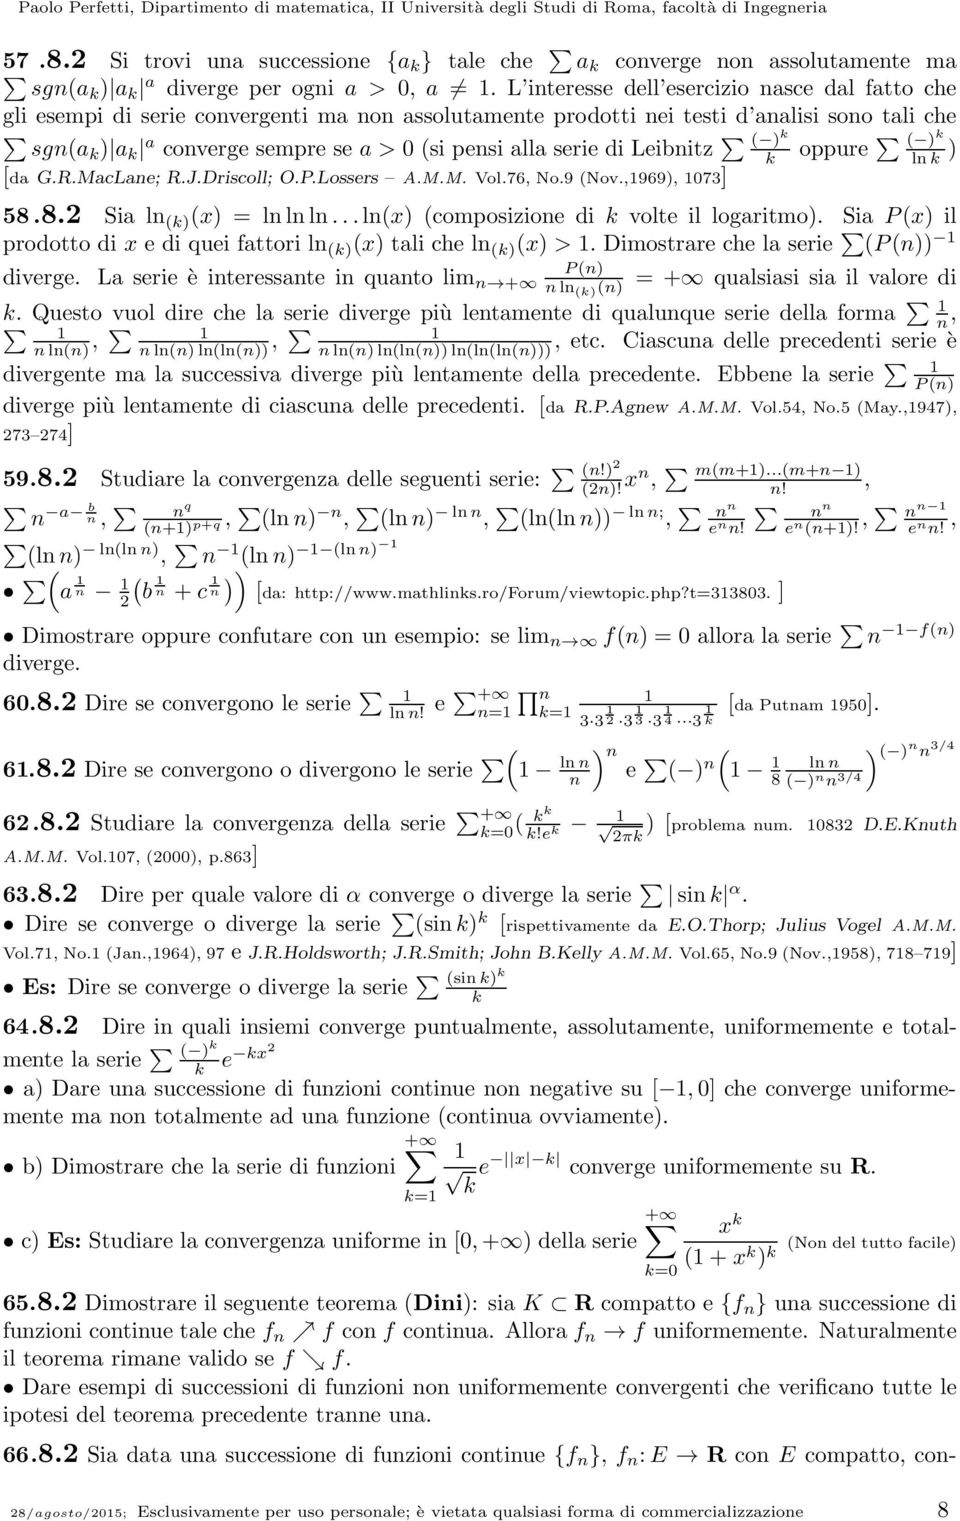 R.MacLae; R.J.Driscoll; O.P.Lossers A.M.M. Vol.76, No.9 Nov.,969, 73] oppure l 58.8. Sia l x lll...lx composizioe di volte il logaritmo. Sia Px il prodotto di x e di quei fattori l x tali che l x >.